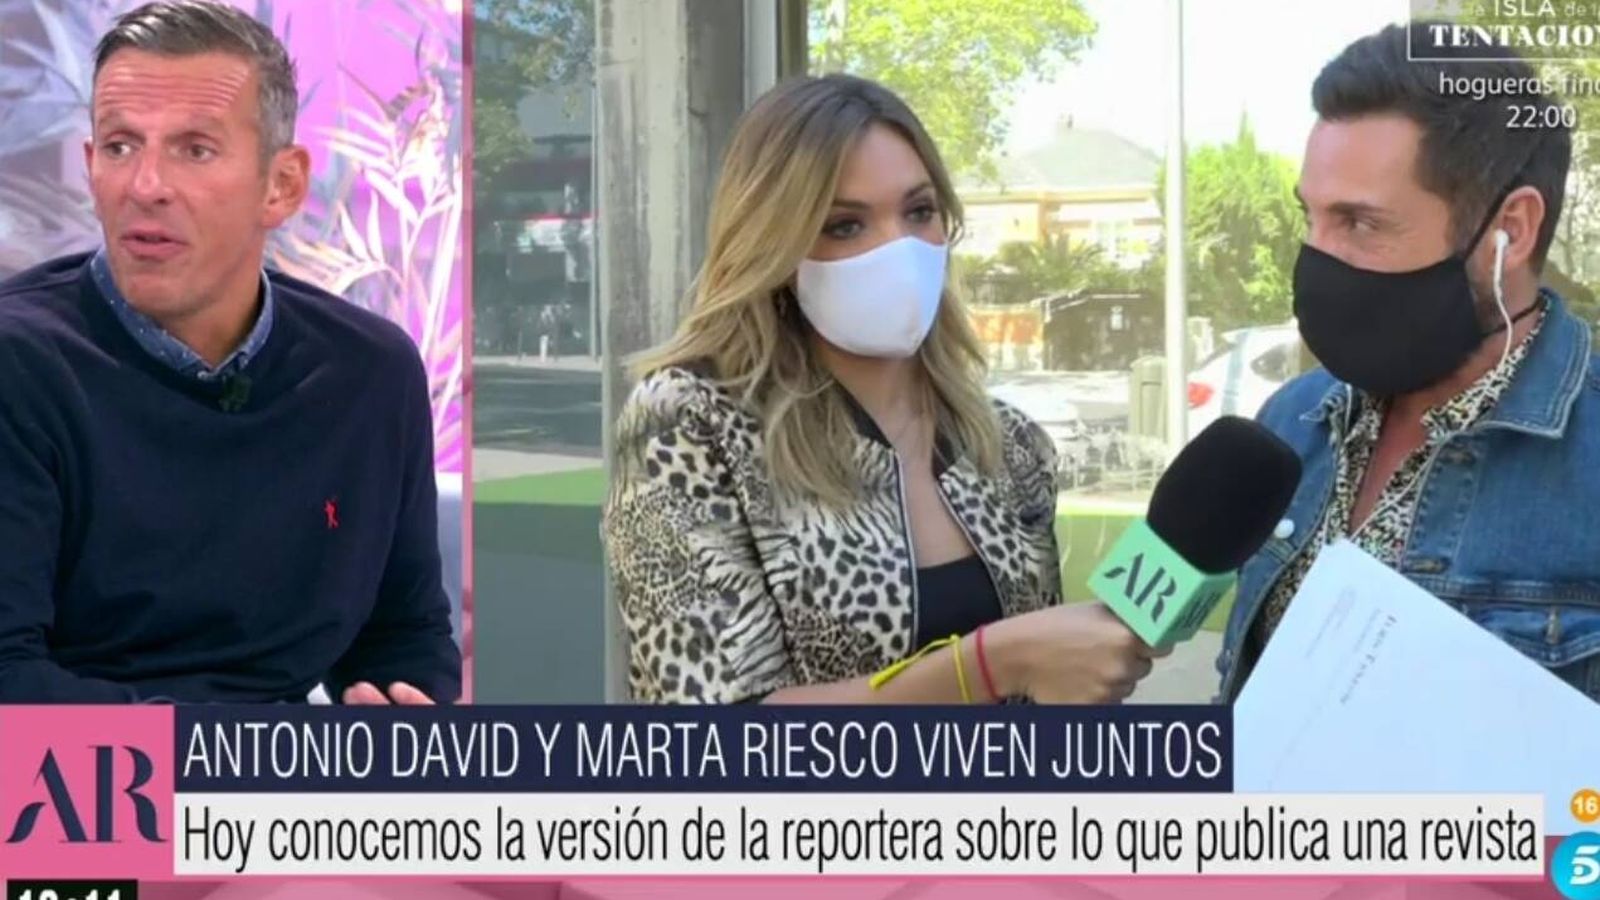 Antonio David Flores y Marta Riesco tienen un pacto secreto